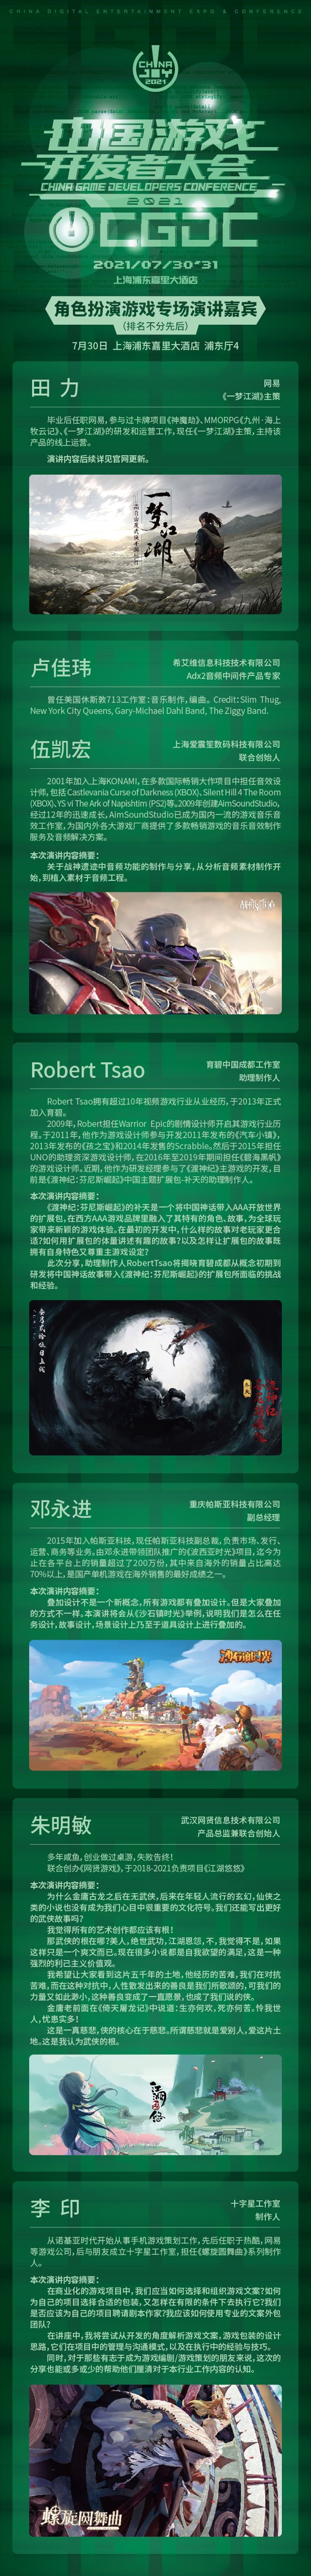 2021中国游戏开发者大会（CGDC）7月30日角色扮演游戏专场演讲嘉宾！业内大牛抢鲜看